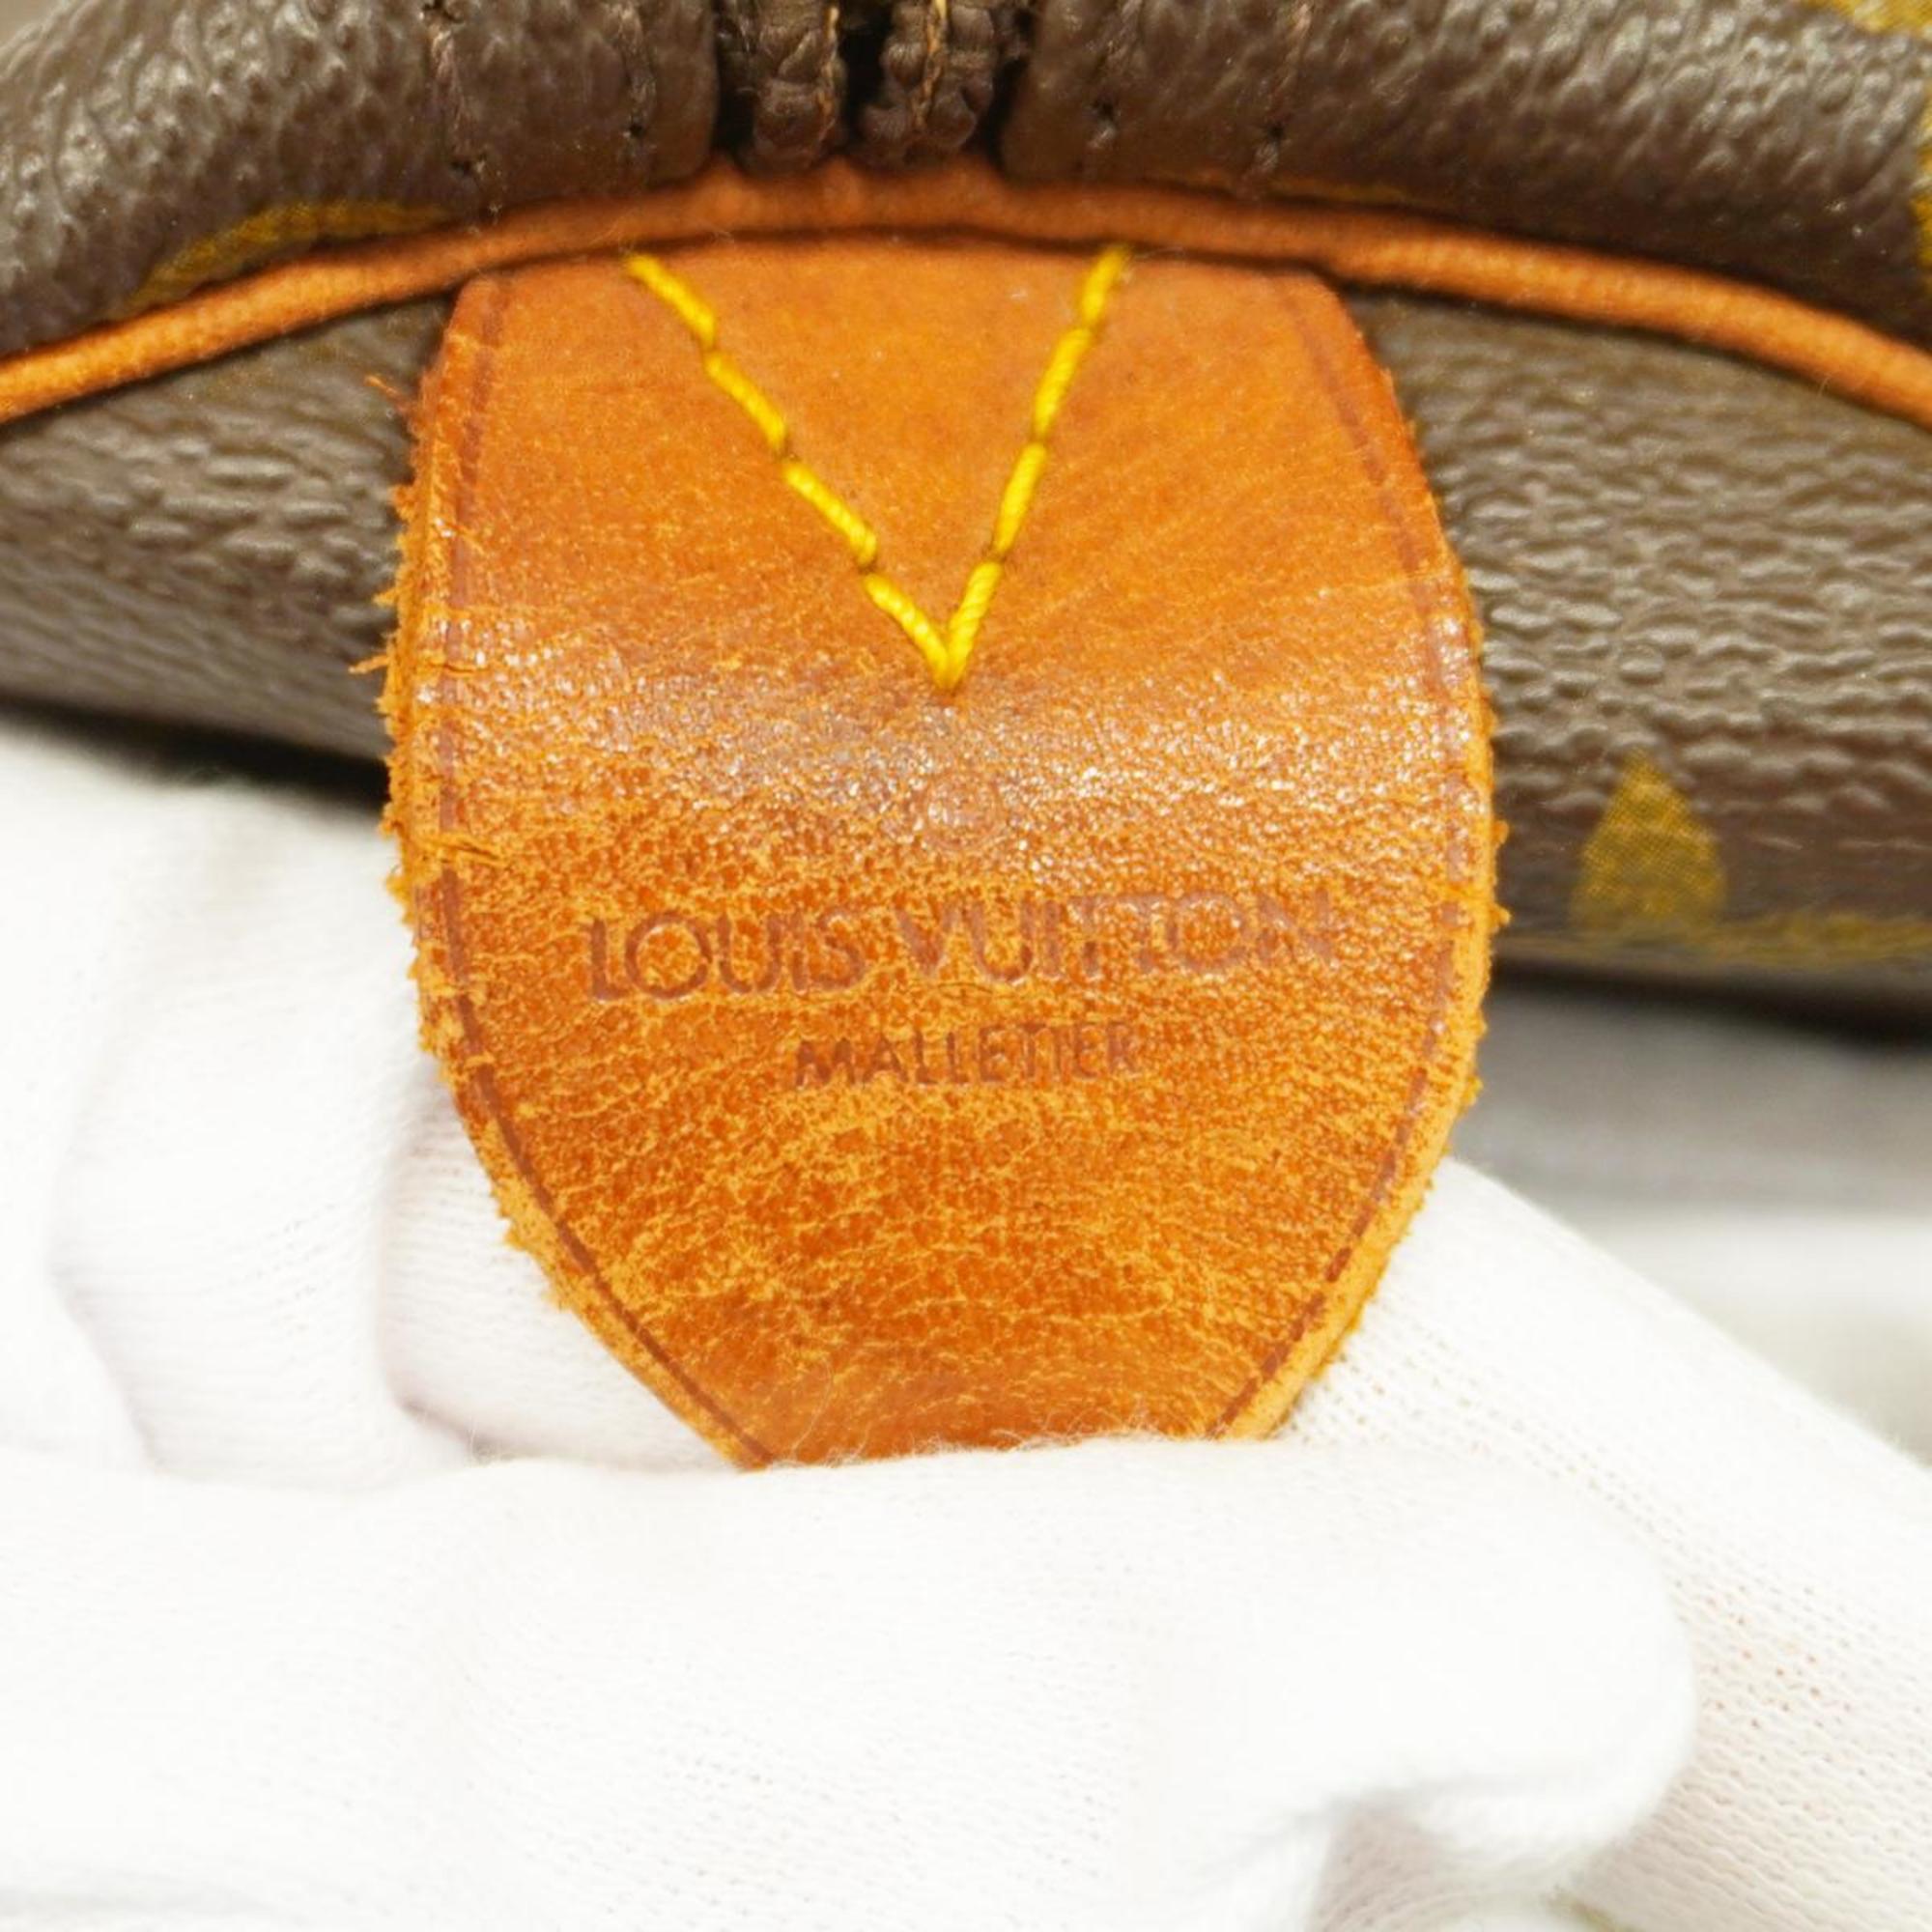 ルイ・ヴィトン(Louis Vuitton) ルイ・ヴィトン ボストンバッグ モノグラム キーポル45 M41428 ブラウンメンズ レディース